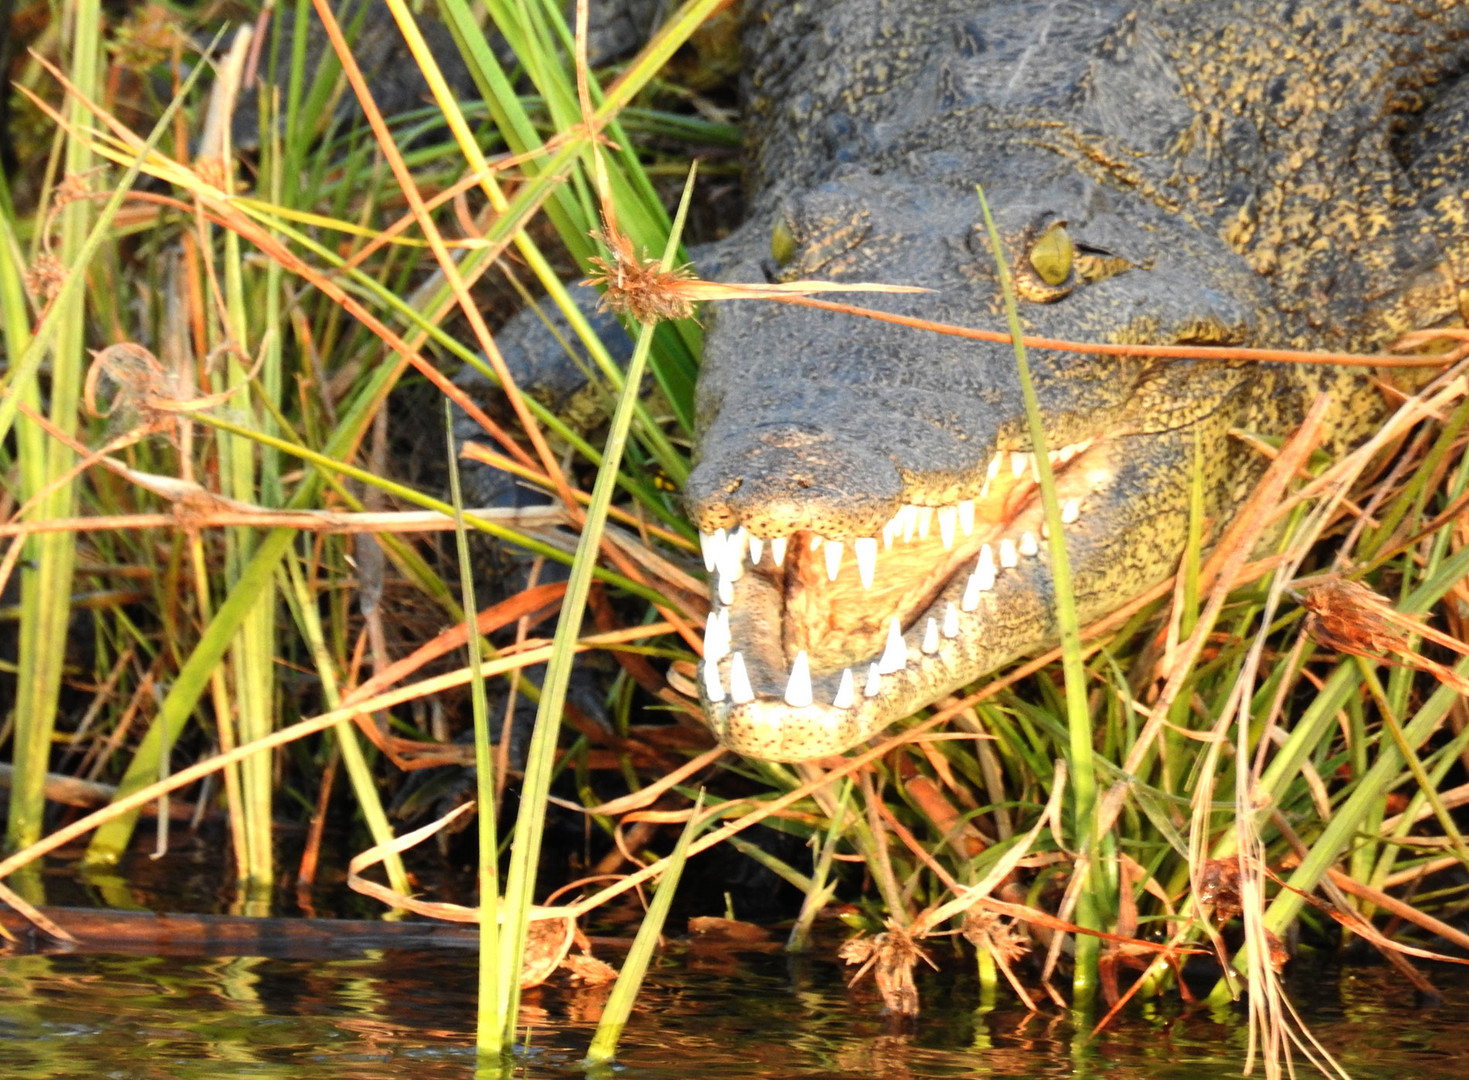 Ein Krokodil zeigt seine "Blenda-med-weißen" Zähne